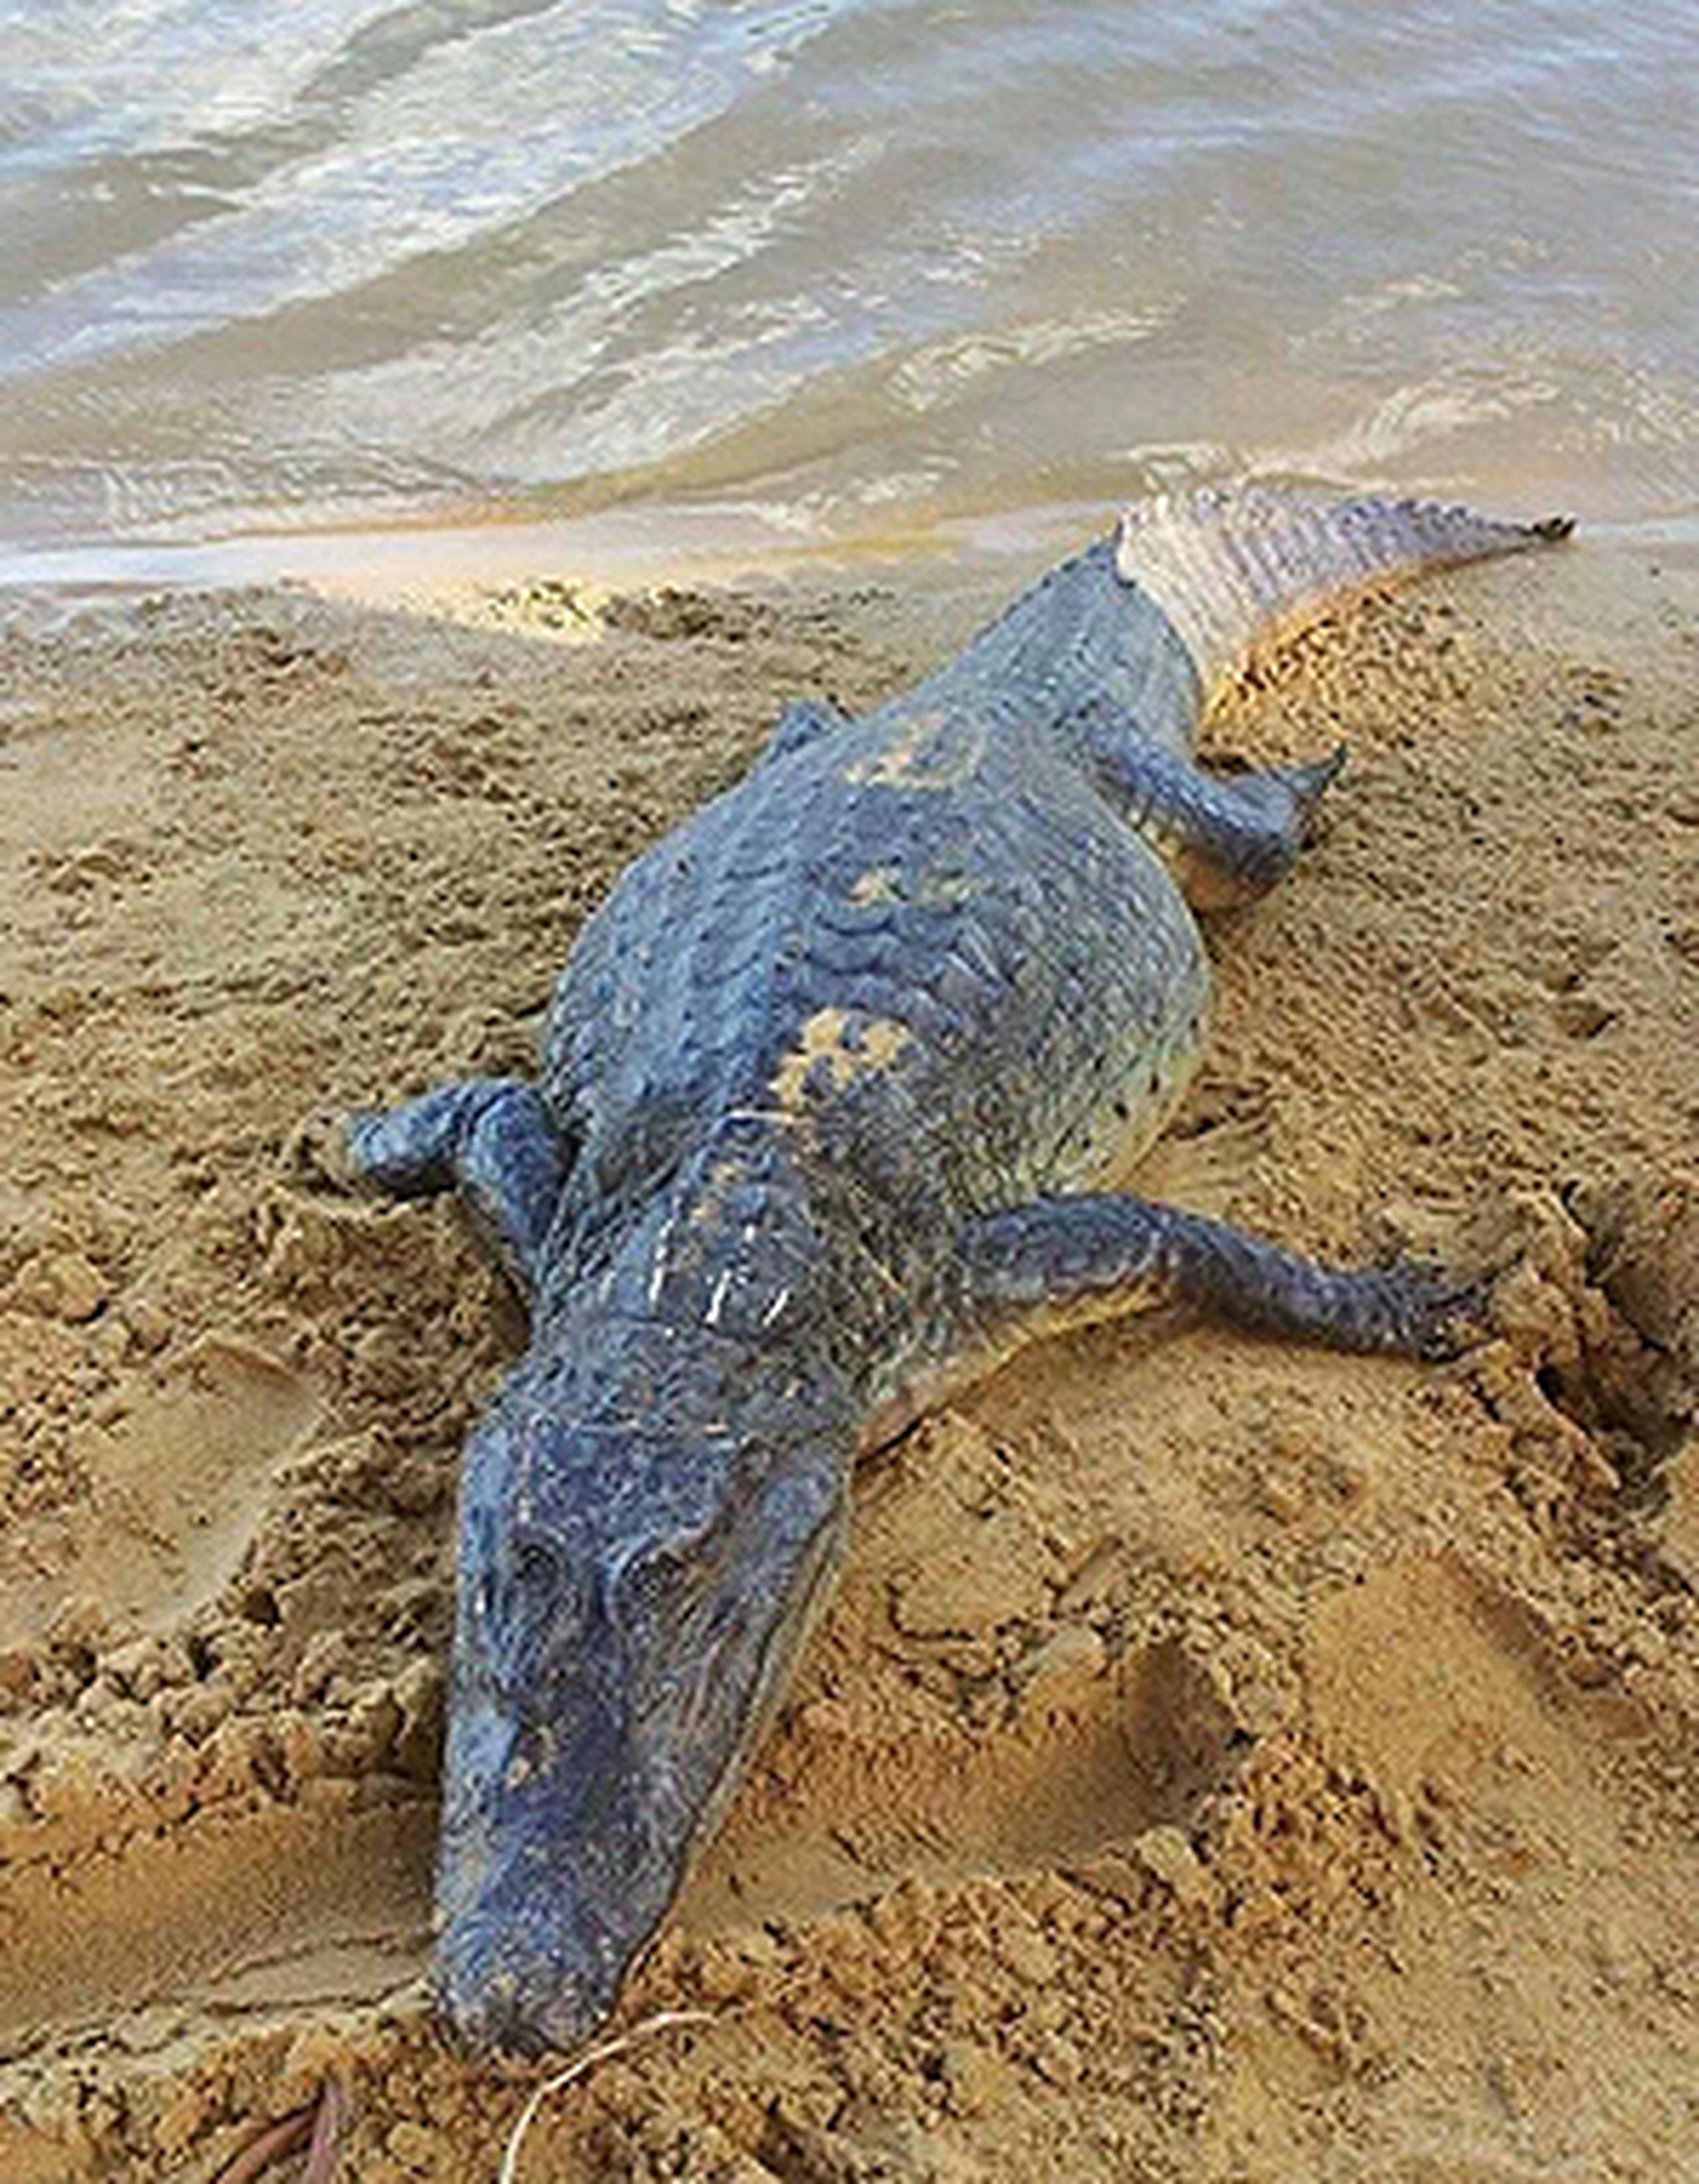 El hallazgo trae nuevamente  la preocupación  sobre la peligrosidad de la presencia de esta especie en los cuerpos de agua dulce del país. (Suministrada)